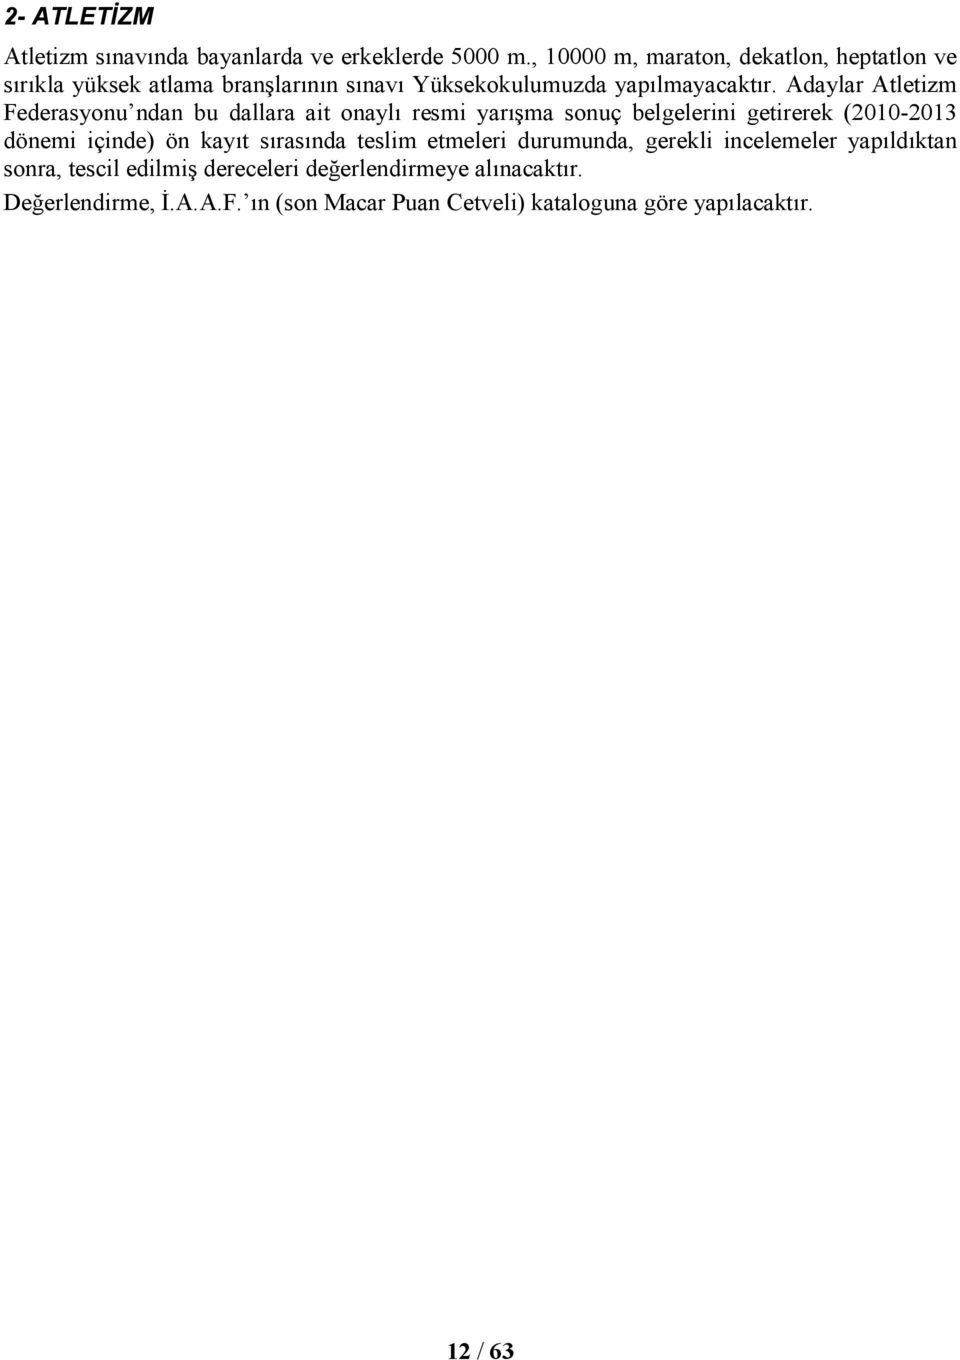 Adaylar Atletizm Federasyonu ndan bu dallara ait onaylı resmi yarışma sonuç belgelerini getirerek (2010-2013 dönemi içinde) ön kayıt